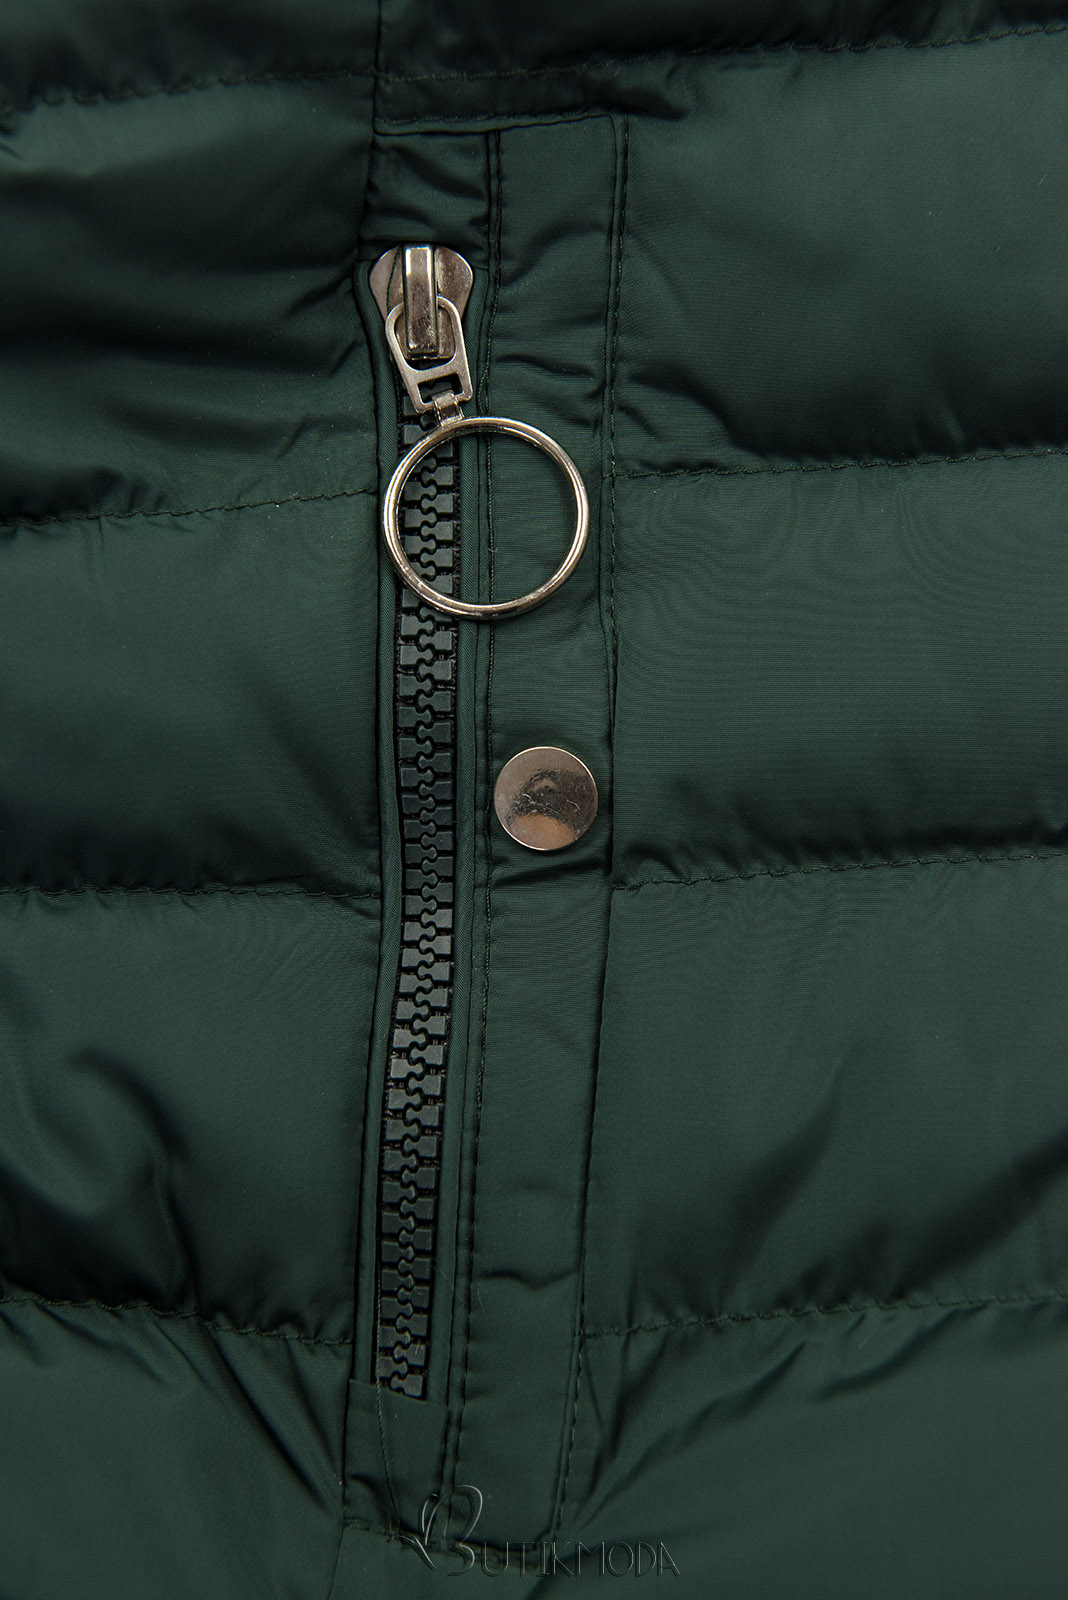 Sötétzöld színű steppelt kabát plüss béléssel